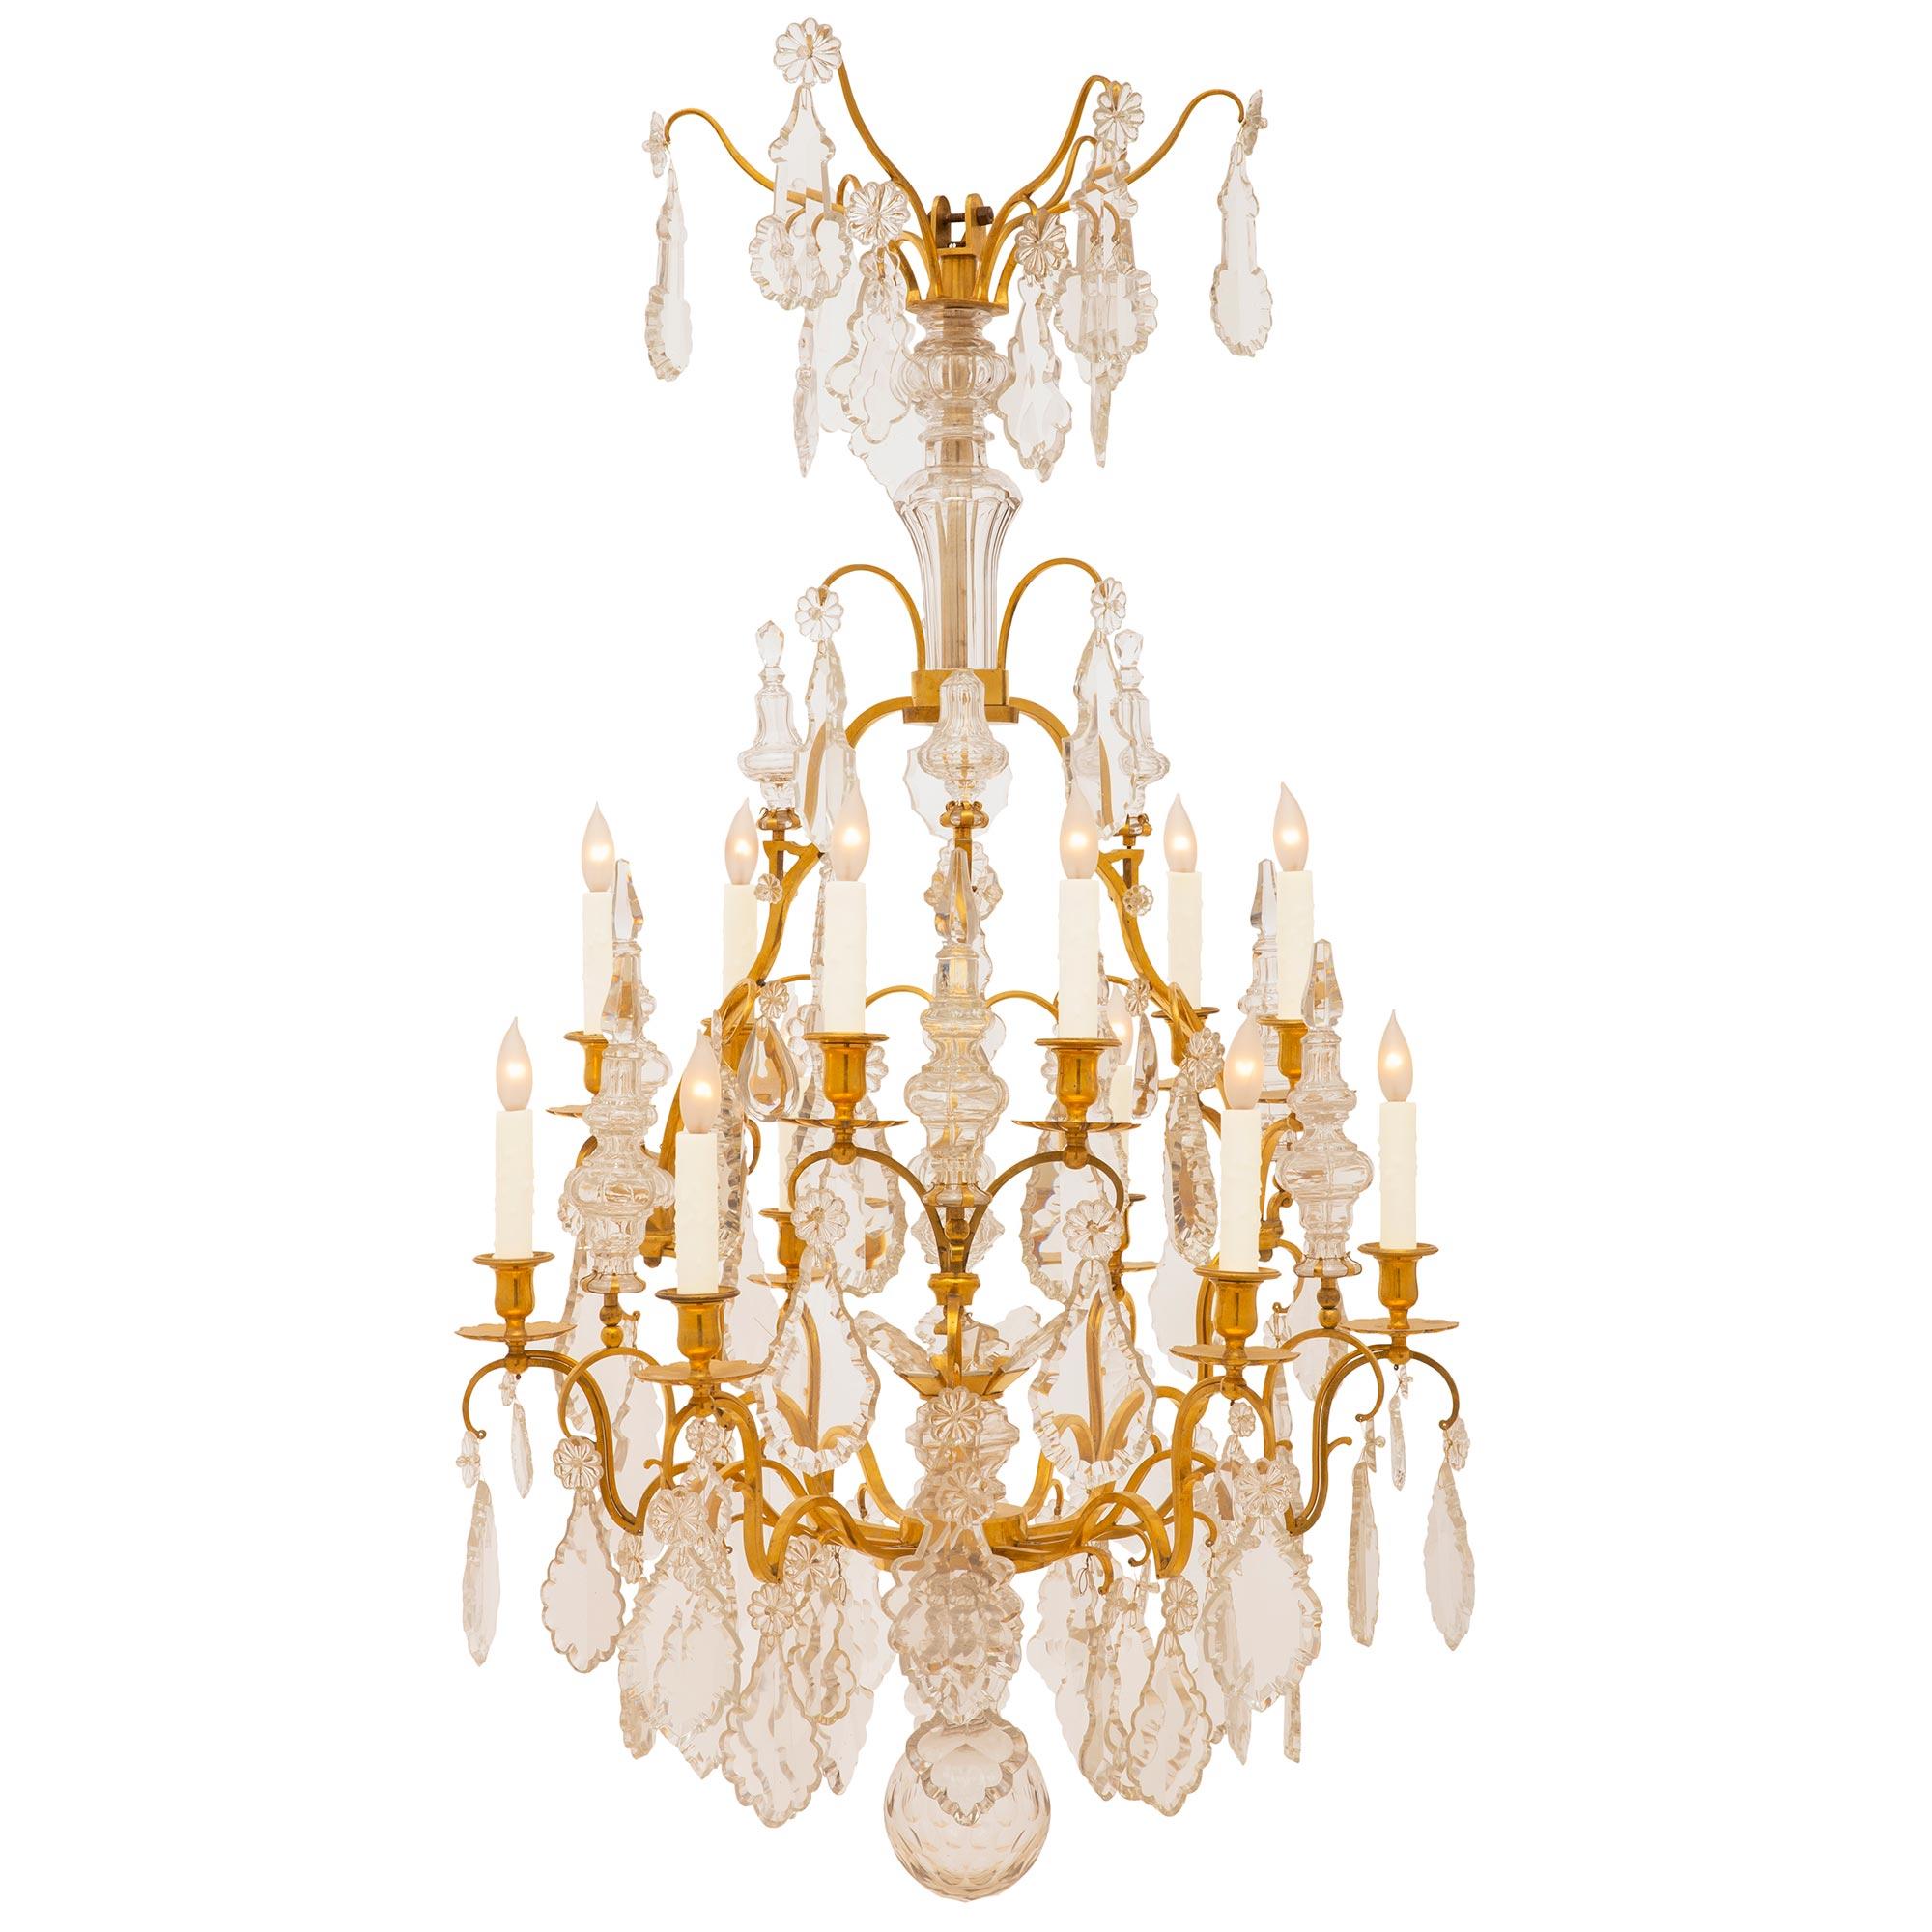 Un lustre de haute qualité du 19ème siècle français en st. Louis XV ormolu et cristal de Baccarat. Ce lustre à douze lumières présente d'impressionnants bras en bronze doré ornés d'élégants cristaux finement taillés. Chaque bras se termine par une